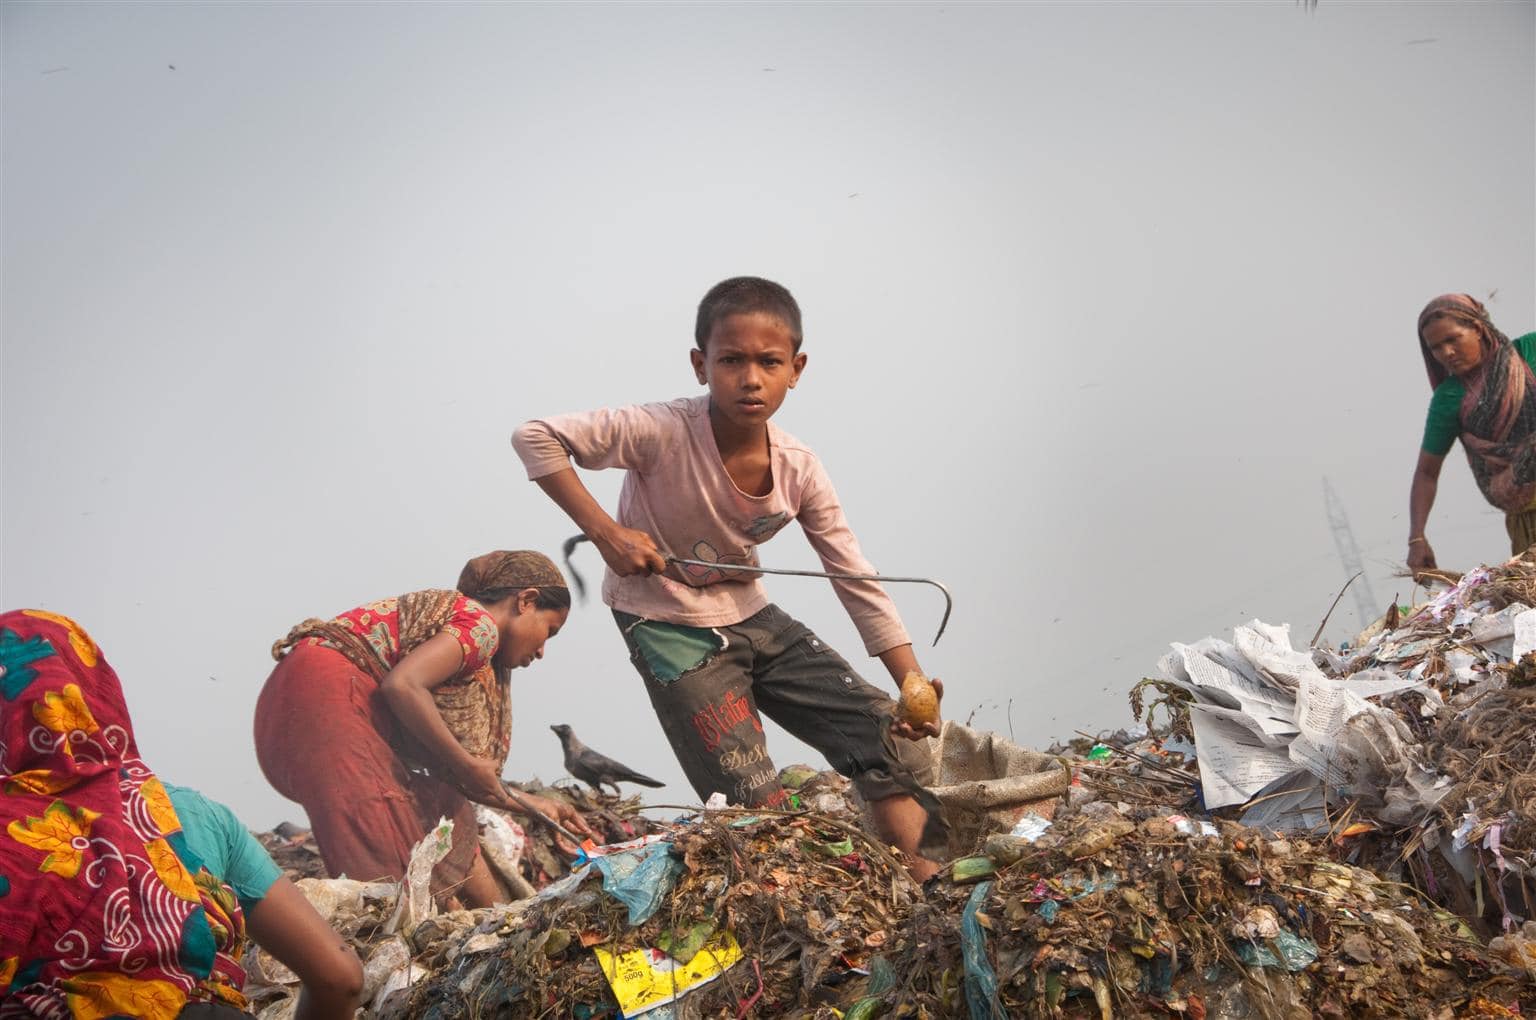 short case study on child labour